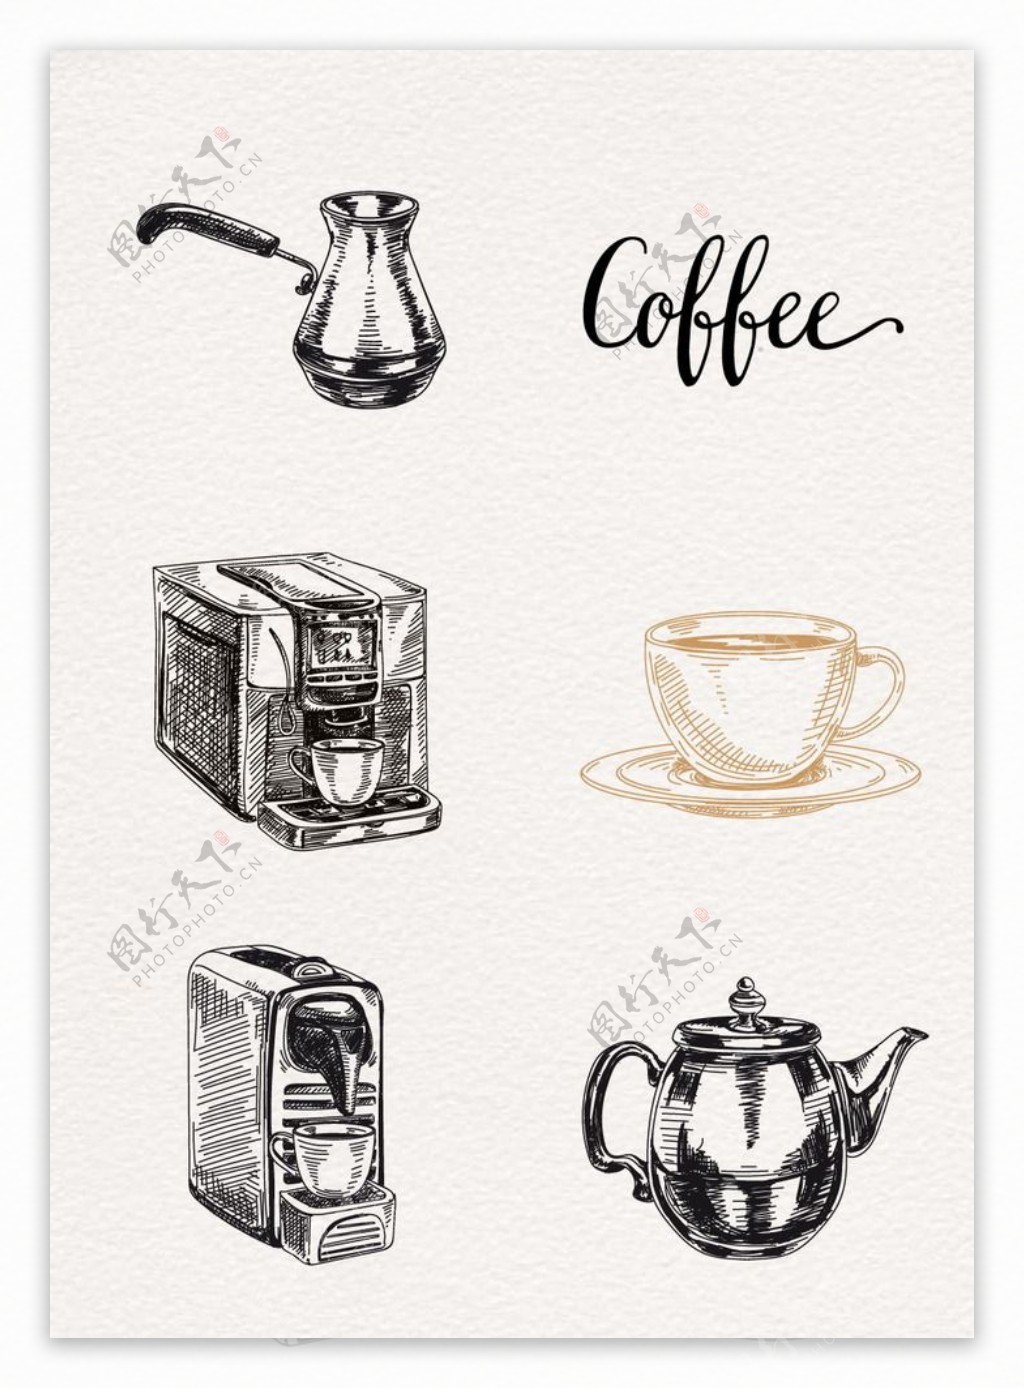 黑色线条手绘咖啡图案